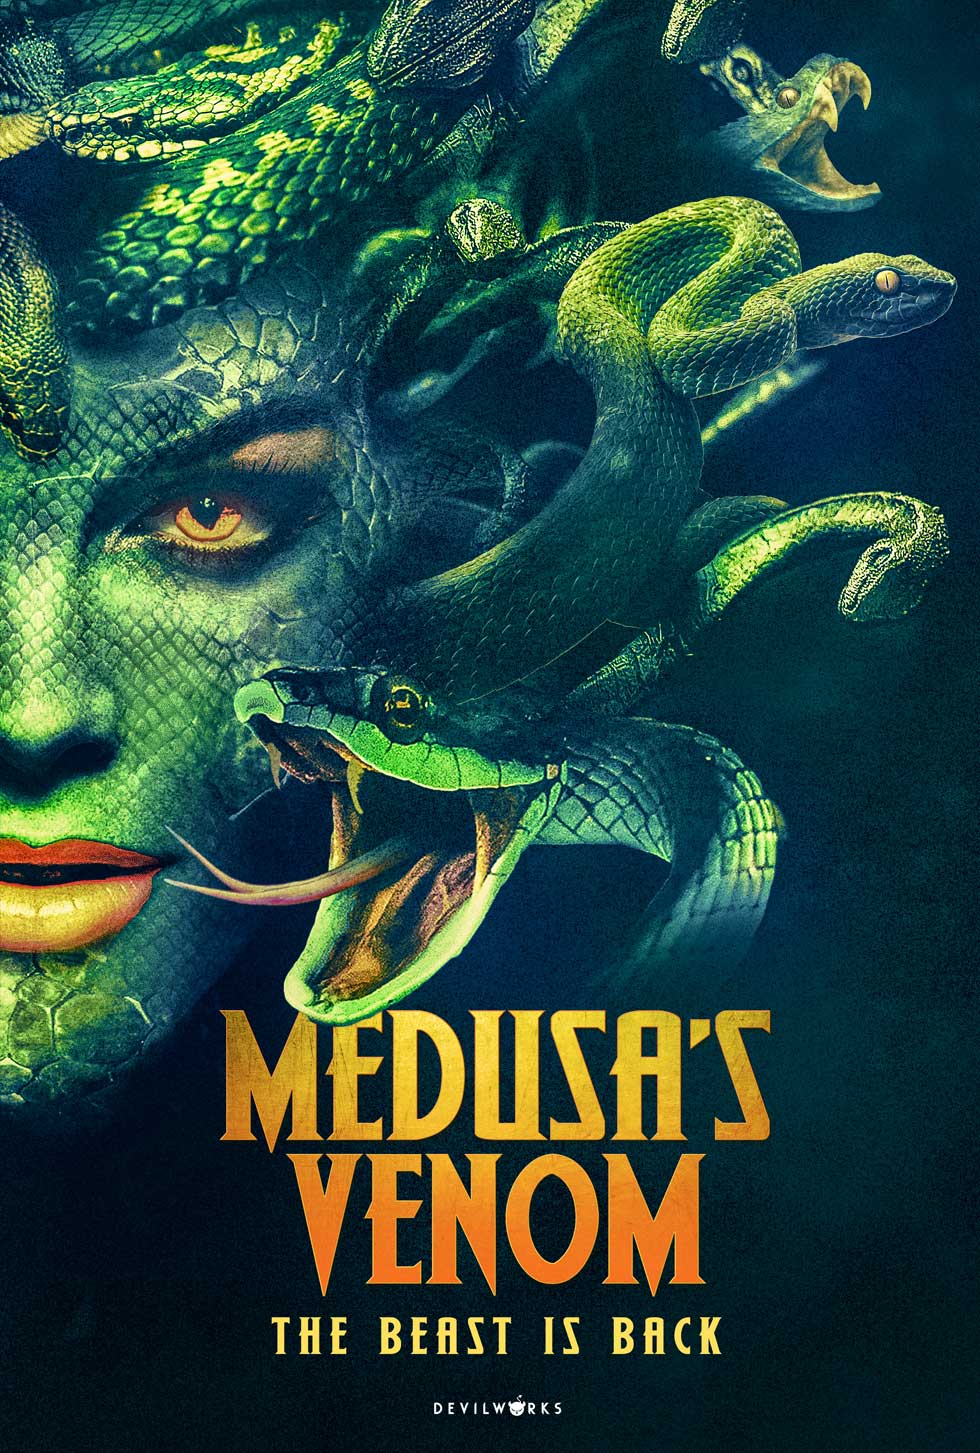 Medusa-Venom-Newera-devilwork-grande